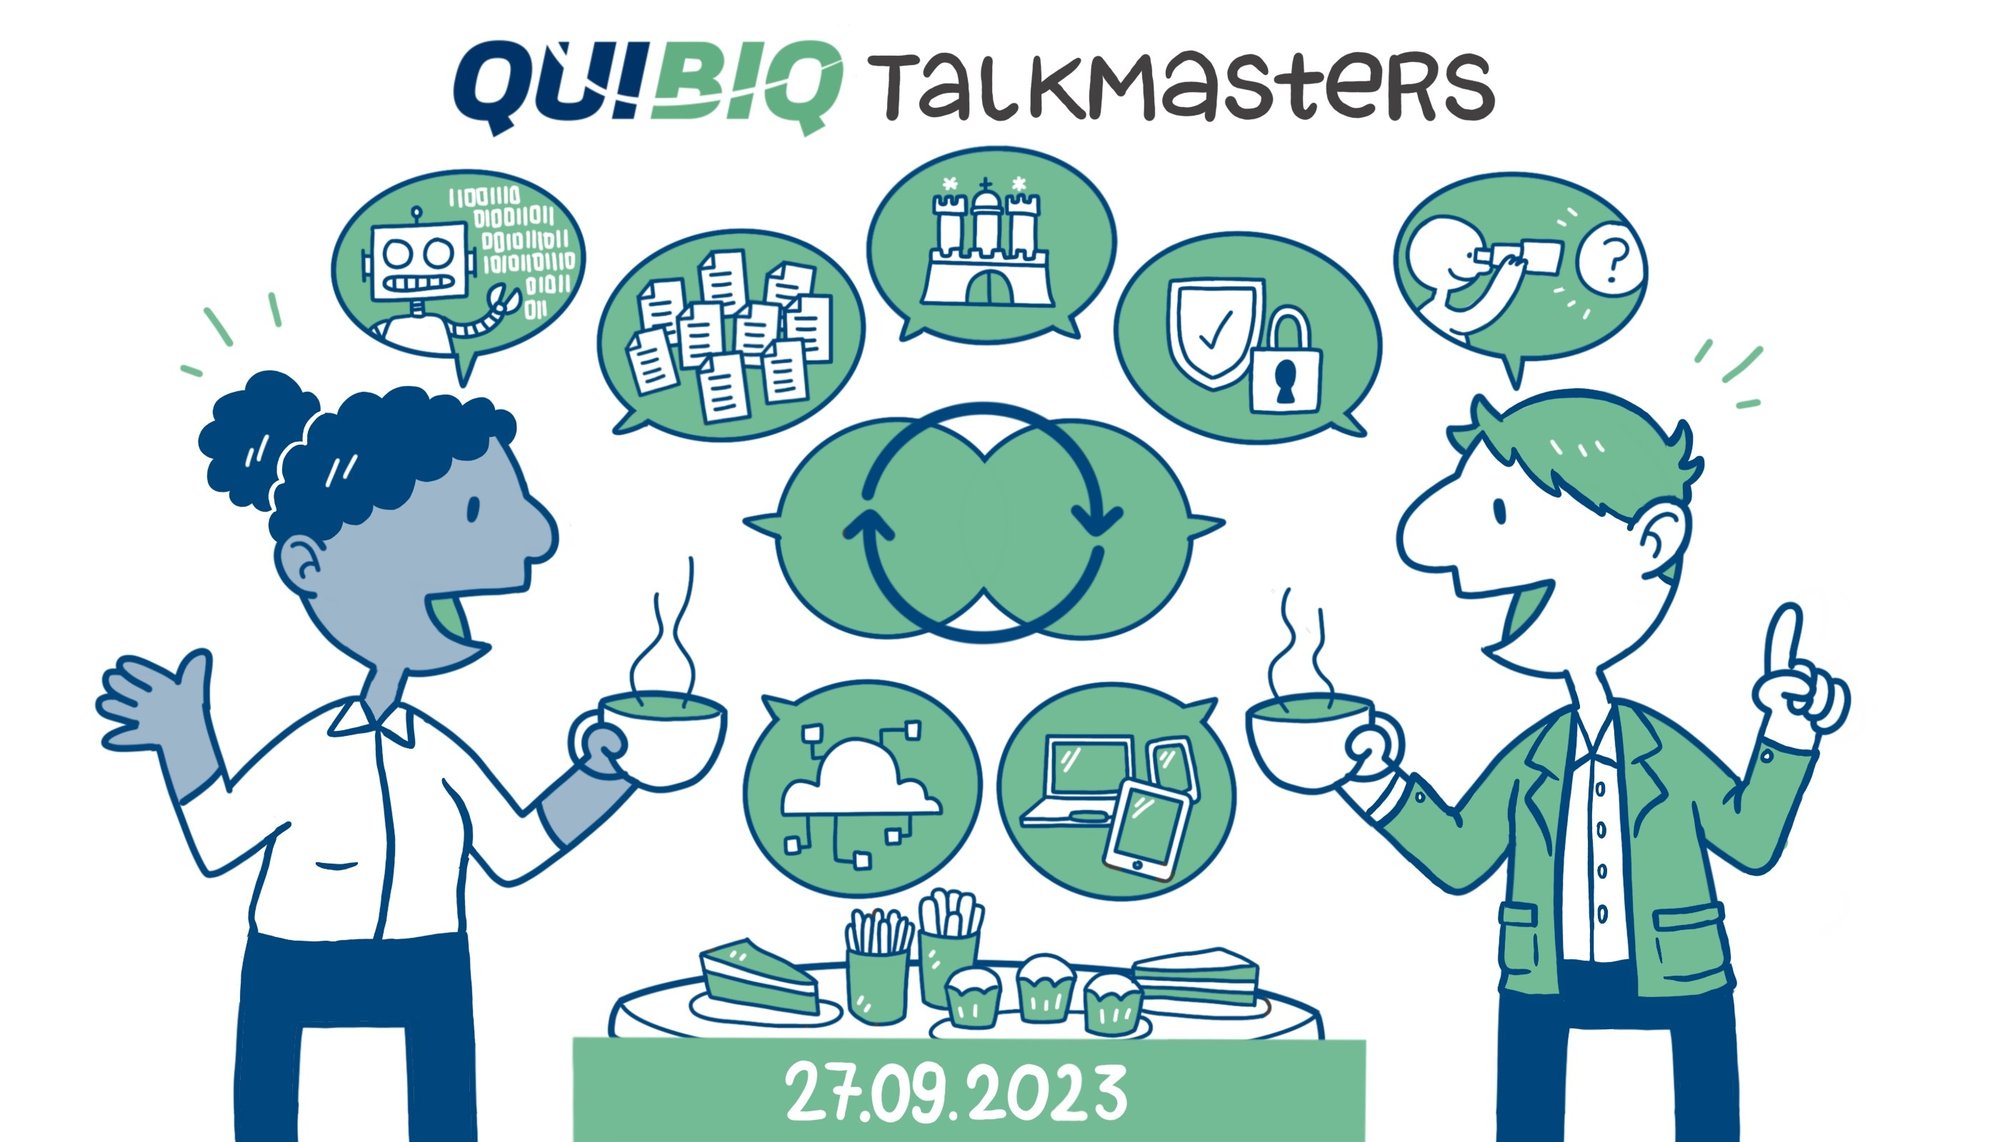 QUIBIQ Hamburg Talkmasters 2023